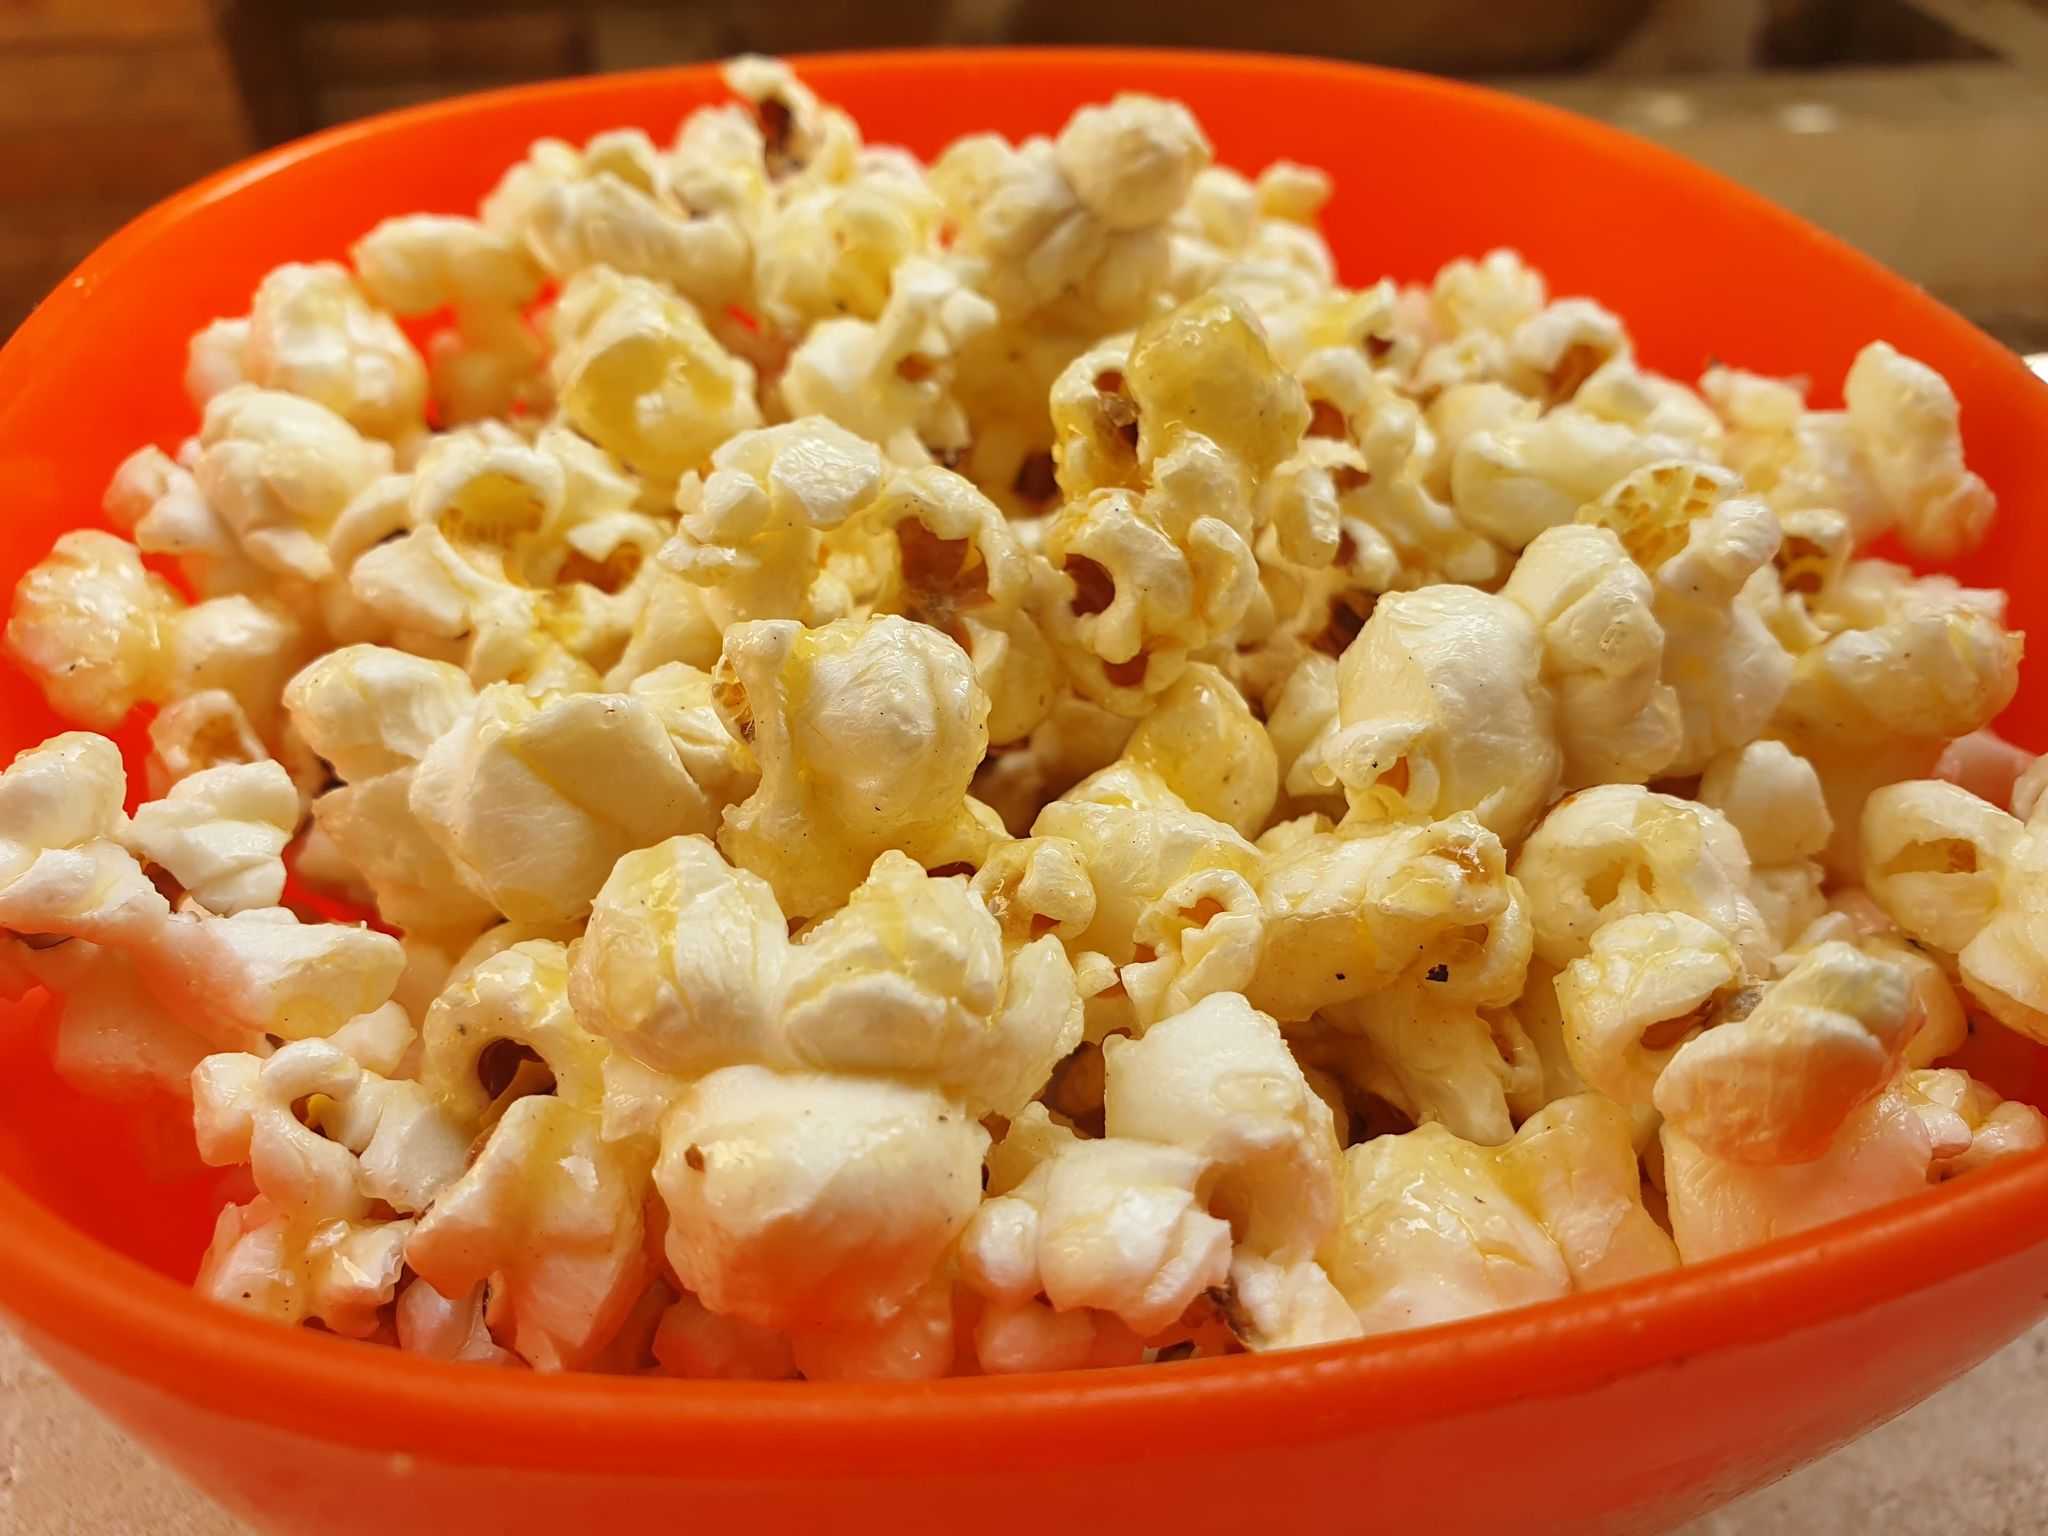 Как приготовить вкусно попкорн в домашних условиях?